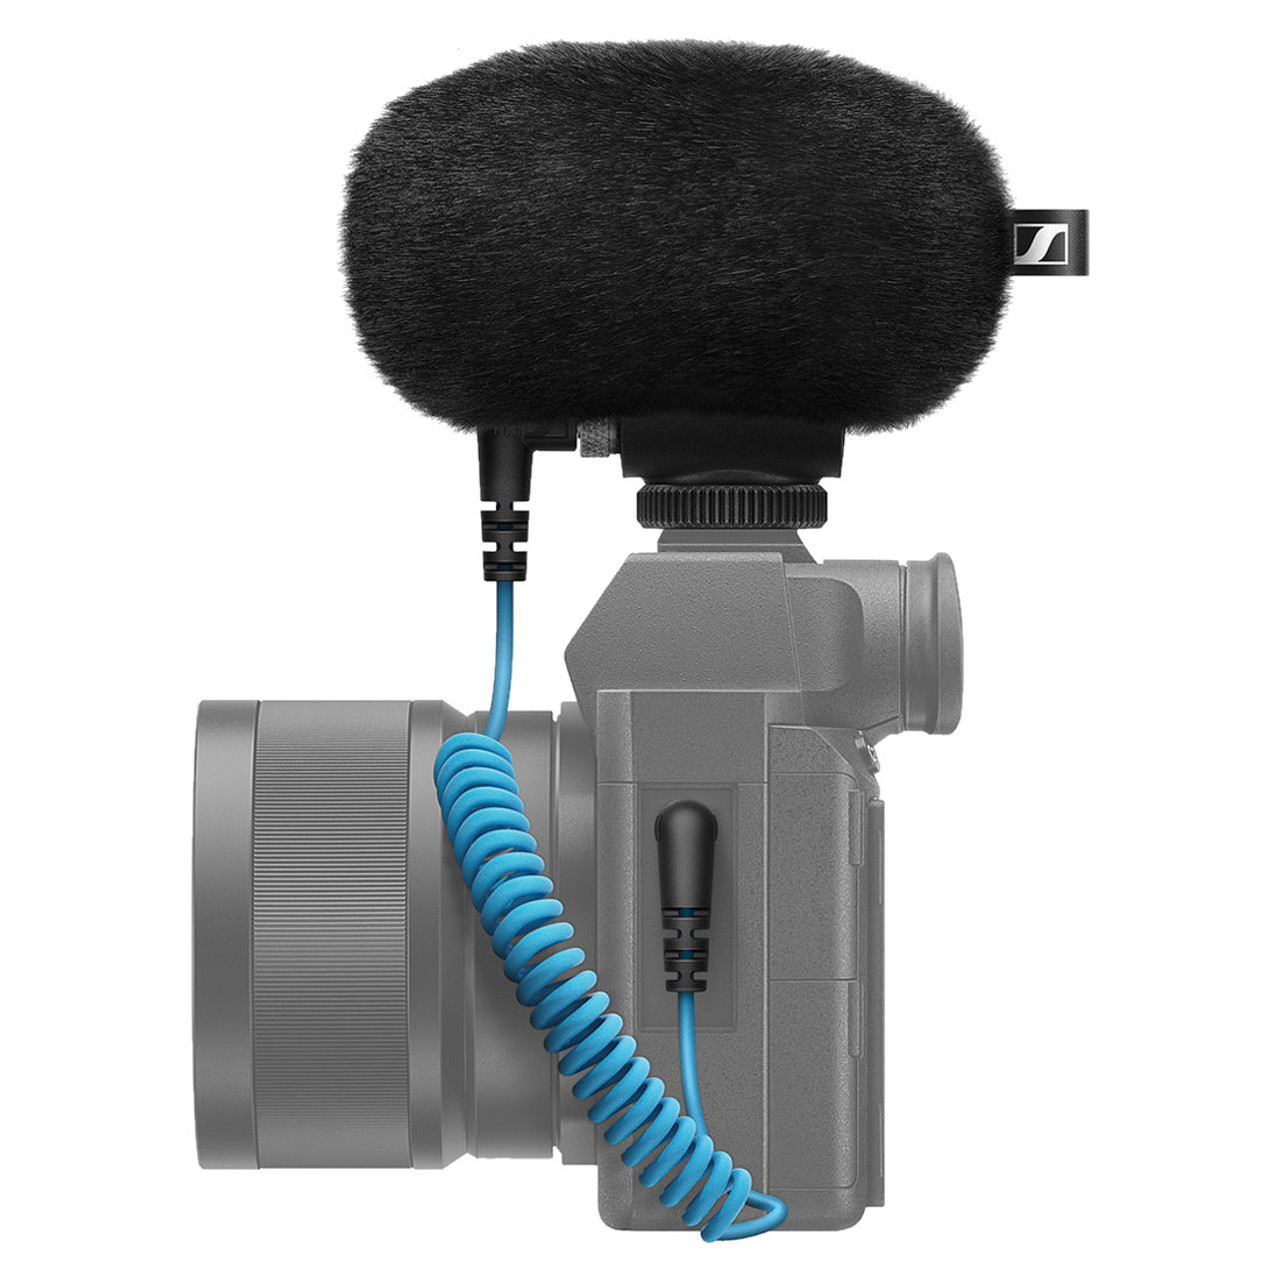 Sennheiser MKE 200 Compact On-Camera Shotgun Microphone Kit 